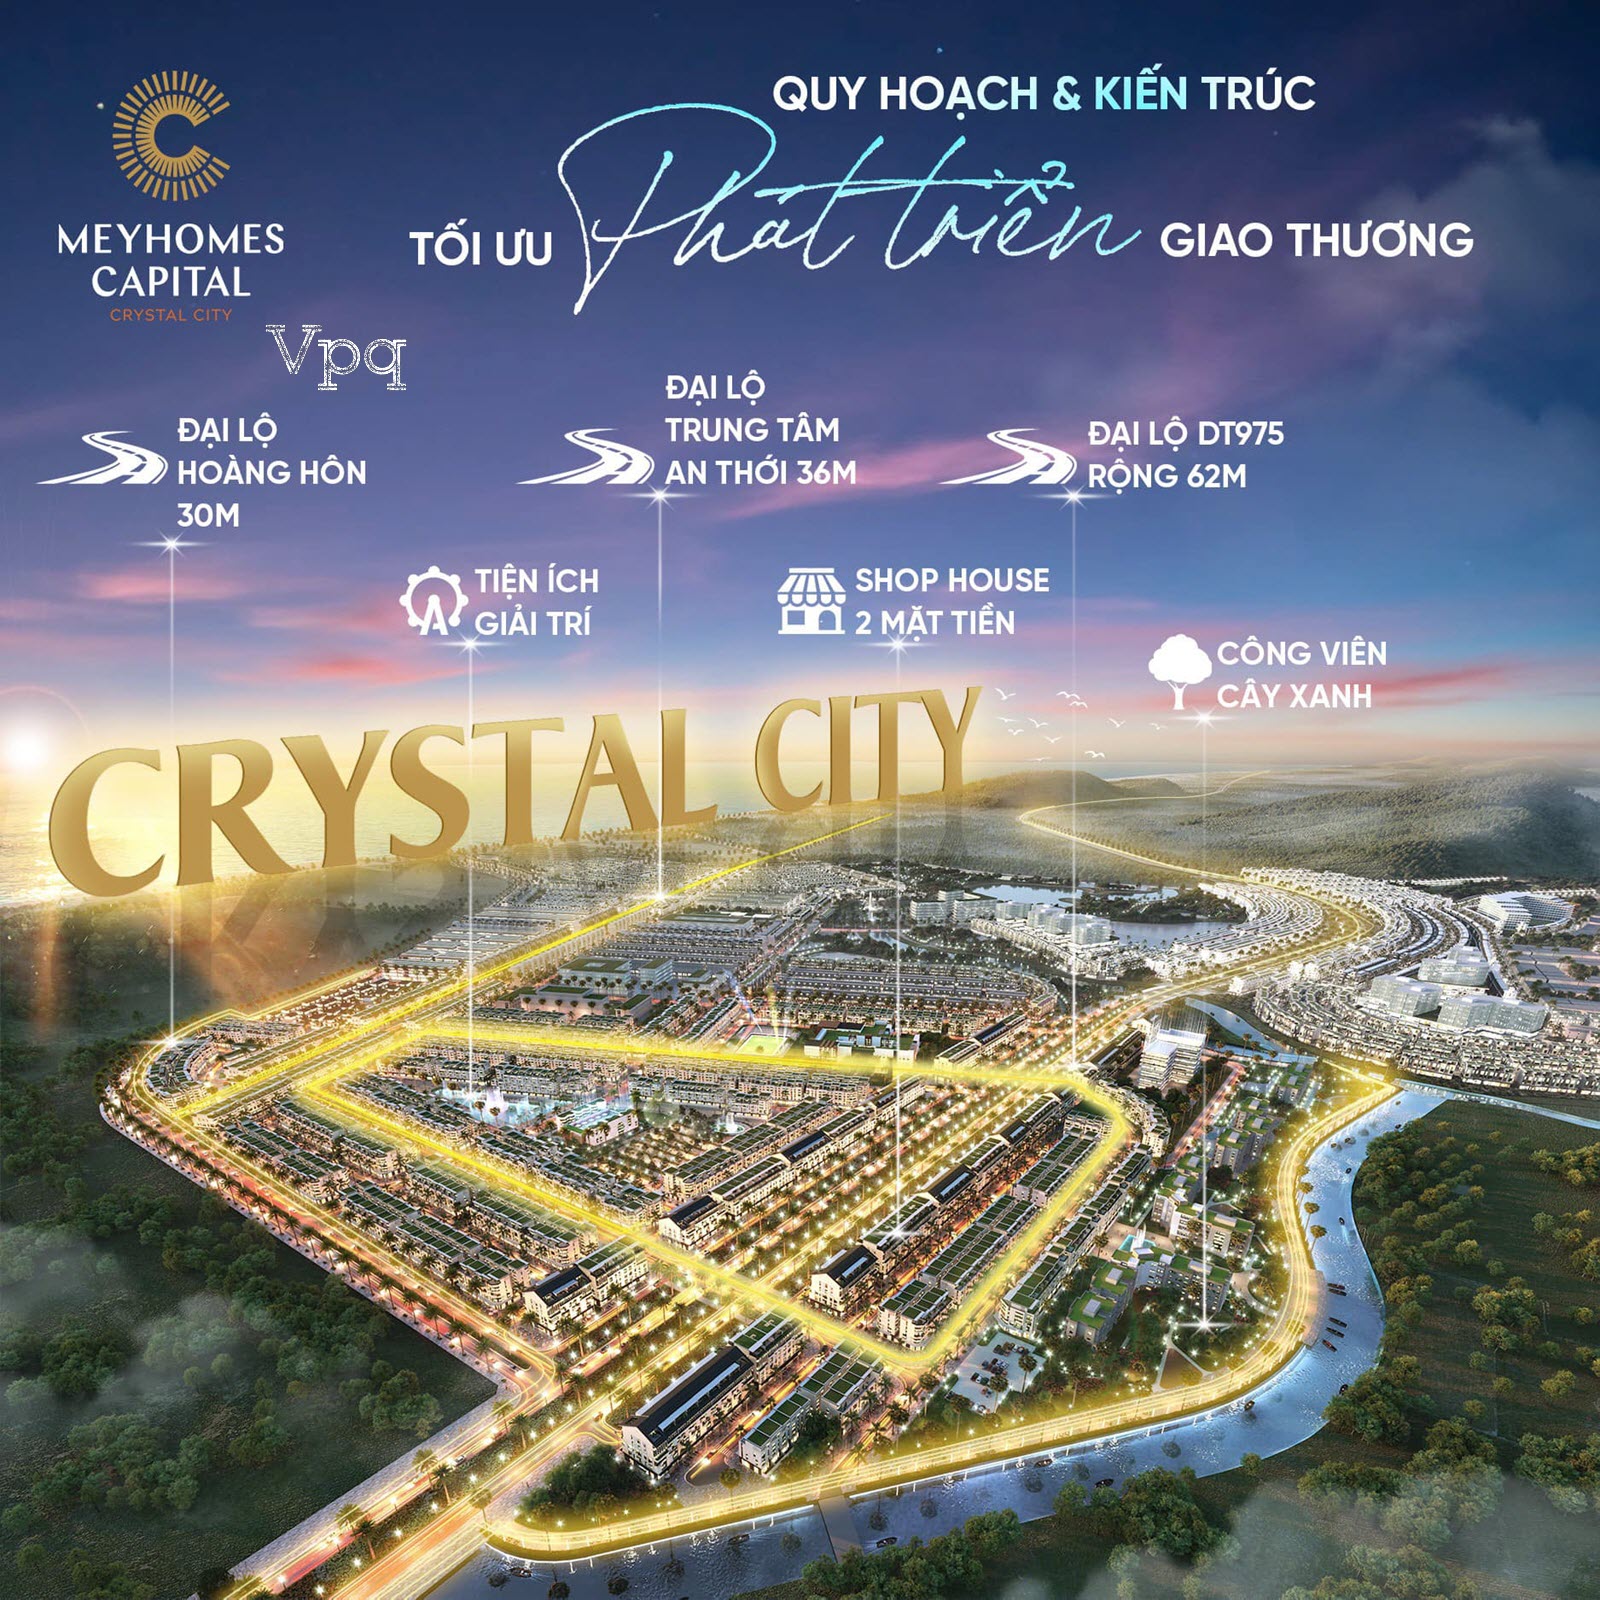 Tổng thể giai đoạn 2 Meyhomes Capital Phú Quốc: Crystal City